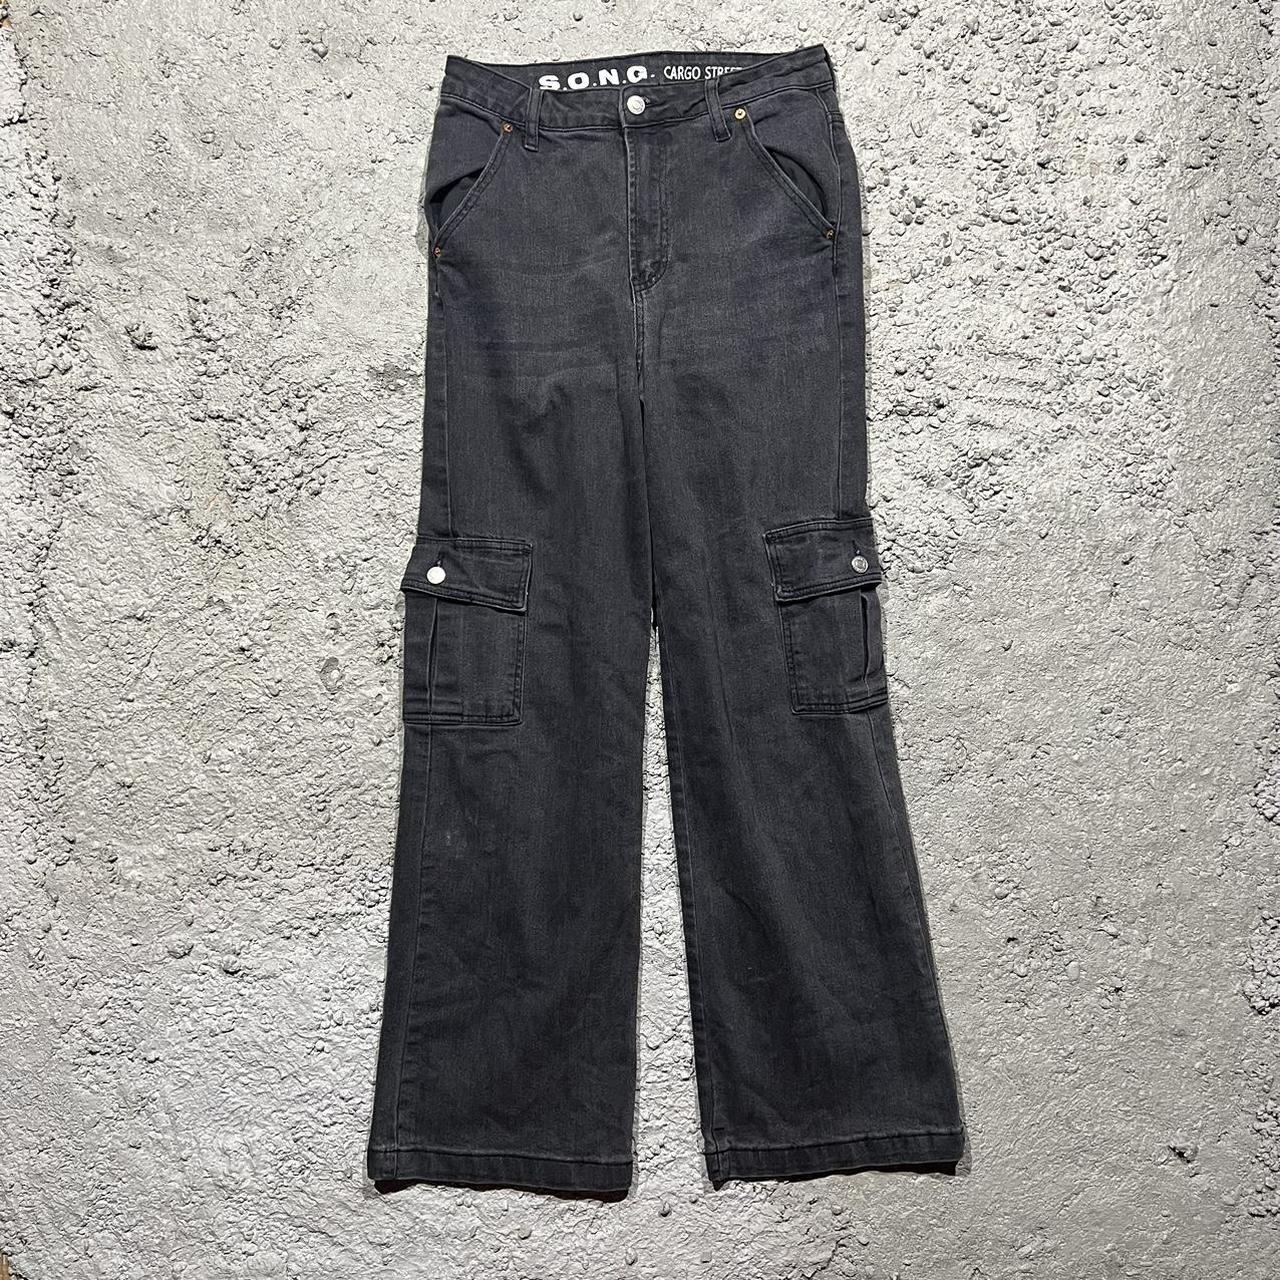 S.O.N.G Women’s Black Cargo Street Jeans Size... - Depop